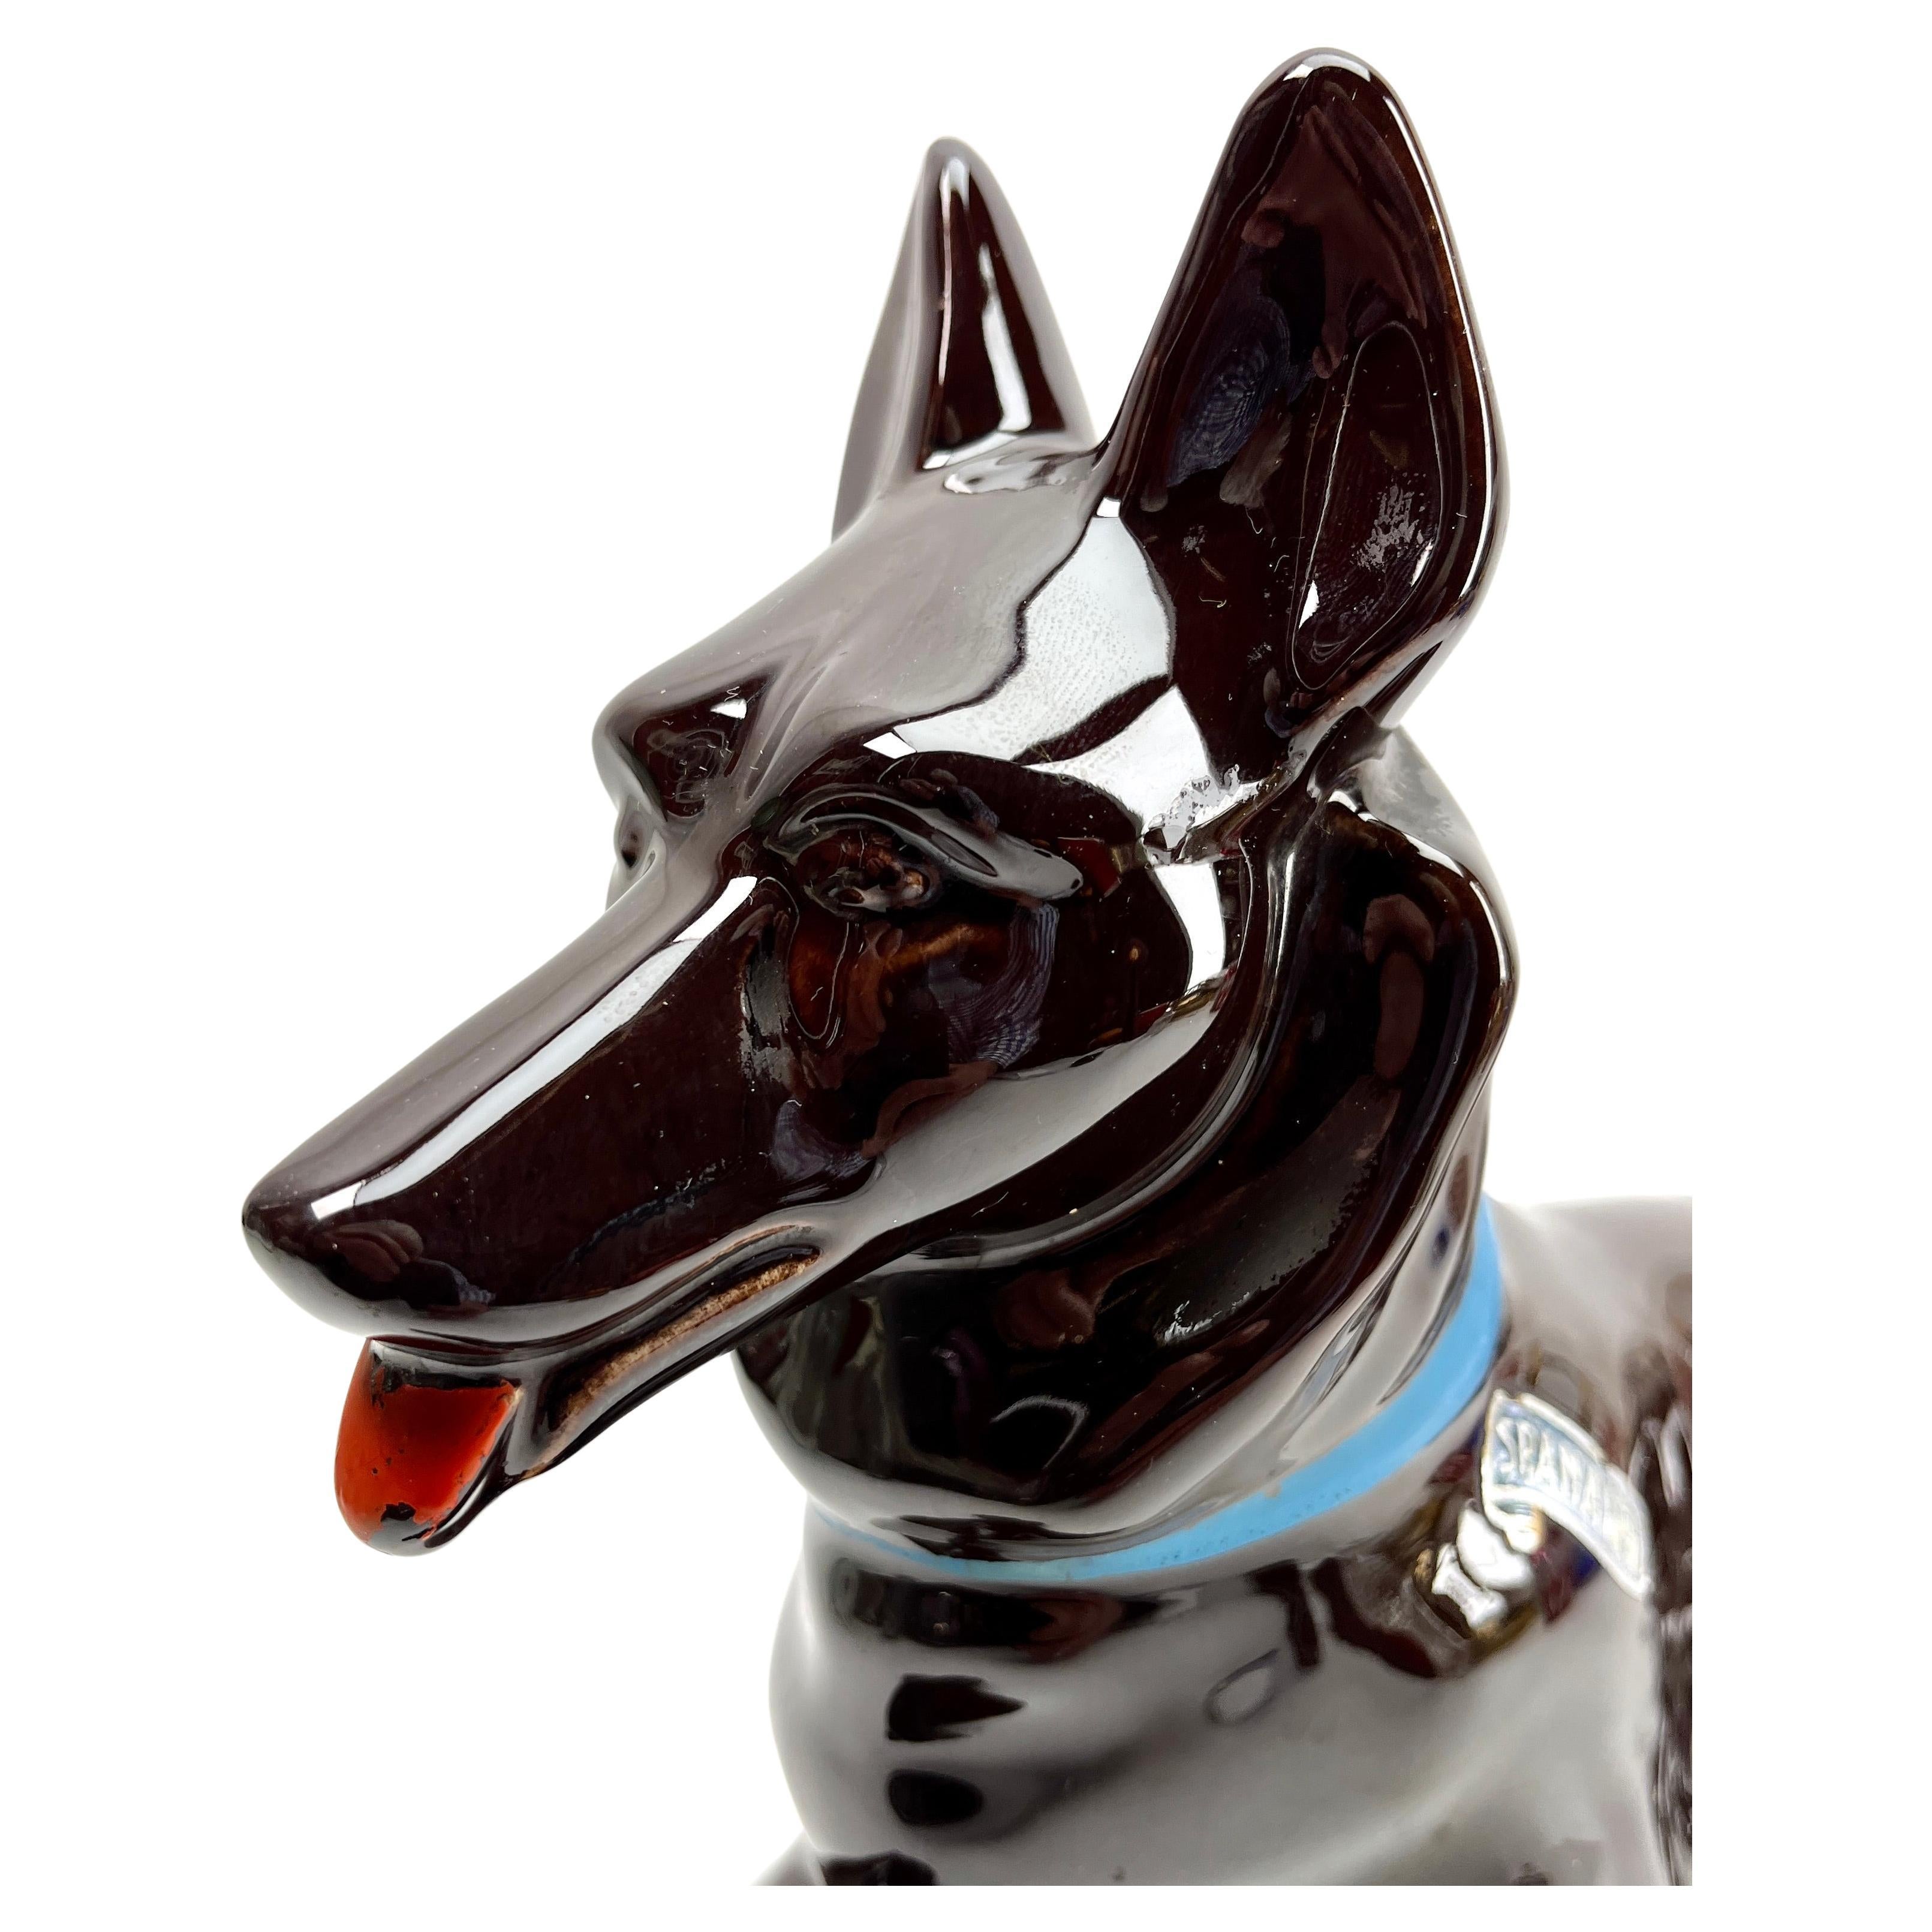 Cette élégante sculpture de chien date de la fin des années 1950-1960 et a été fabriquée en Italie.
La pièce est en excellent état et d'une grande beauté !

D'autres pièces Art Nouveau, Art déco et Vintage sont disponibles :

Avec mes meilleurs vœux